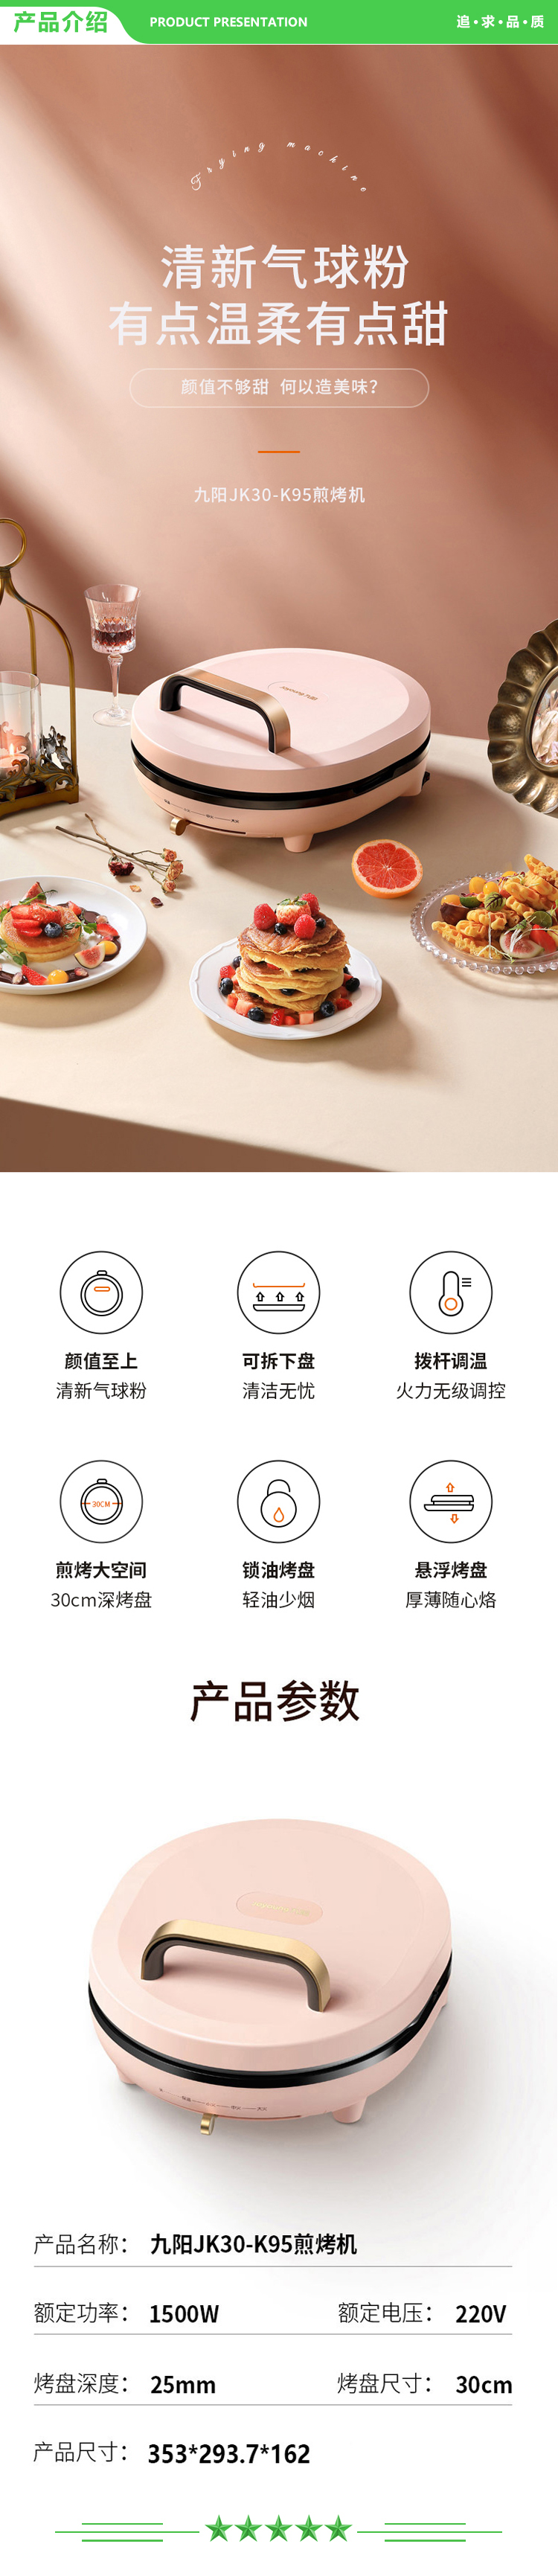 九阳 Joyoung JK30-K95 电饼铛家用双面加热煎烤机烙饼机.jpg